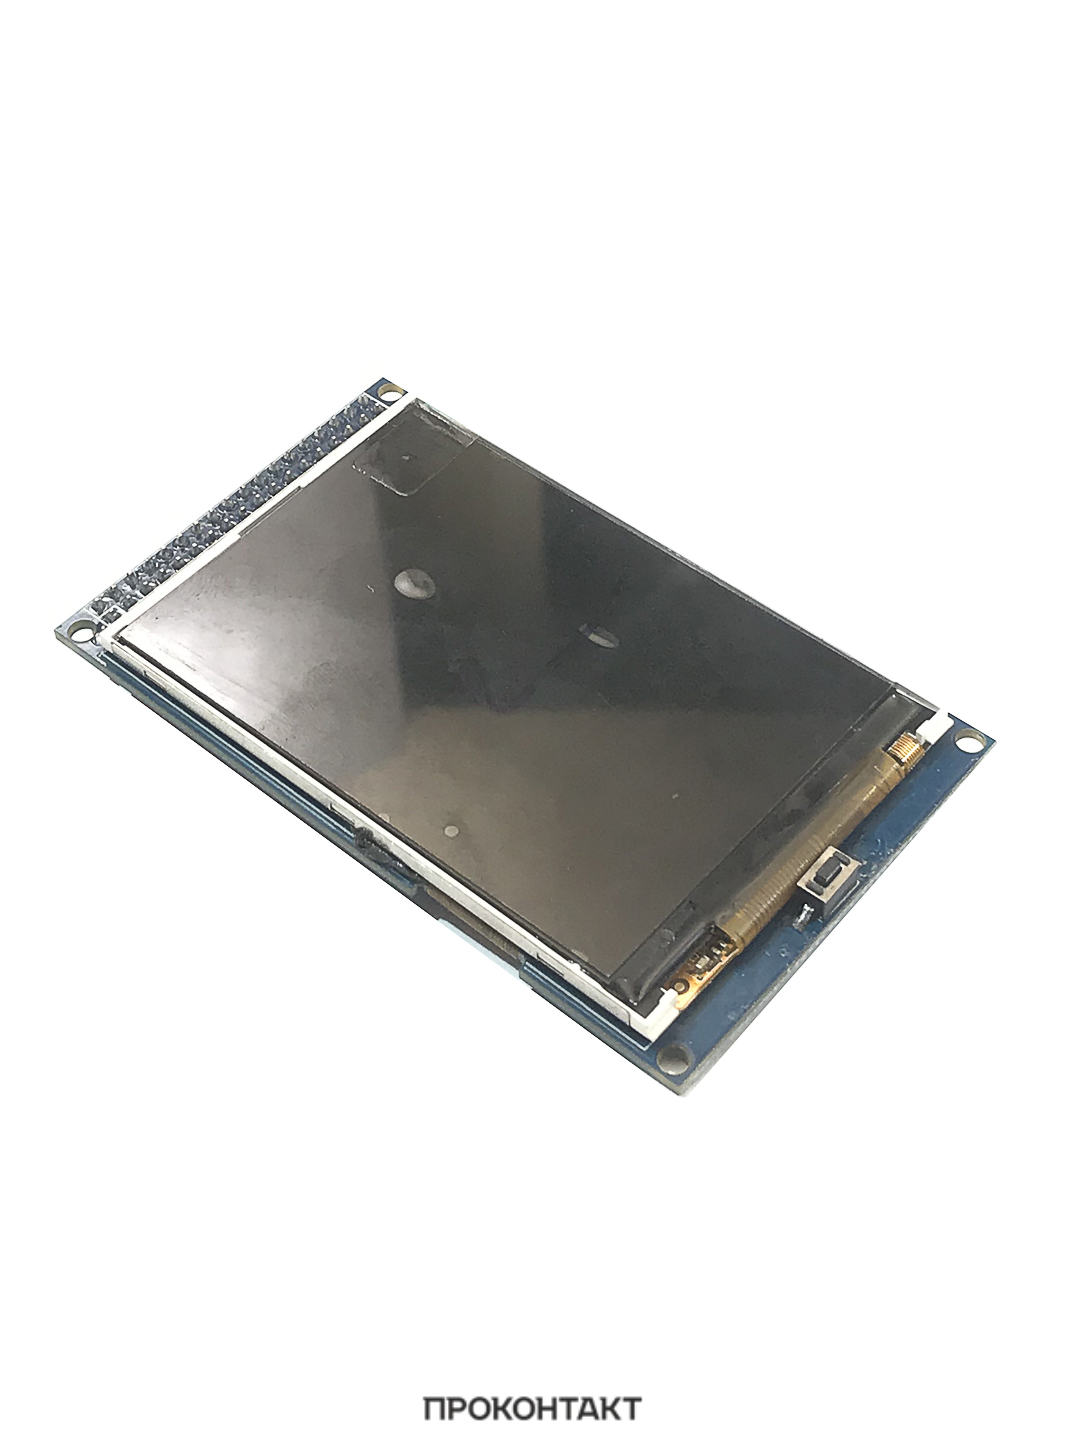 Купить Дисплей TFT LCD 3.2 480x320 Module для Arduino Mega2560 в Челябинске